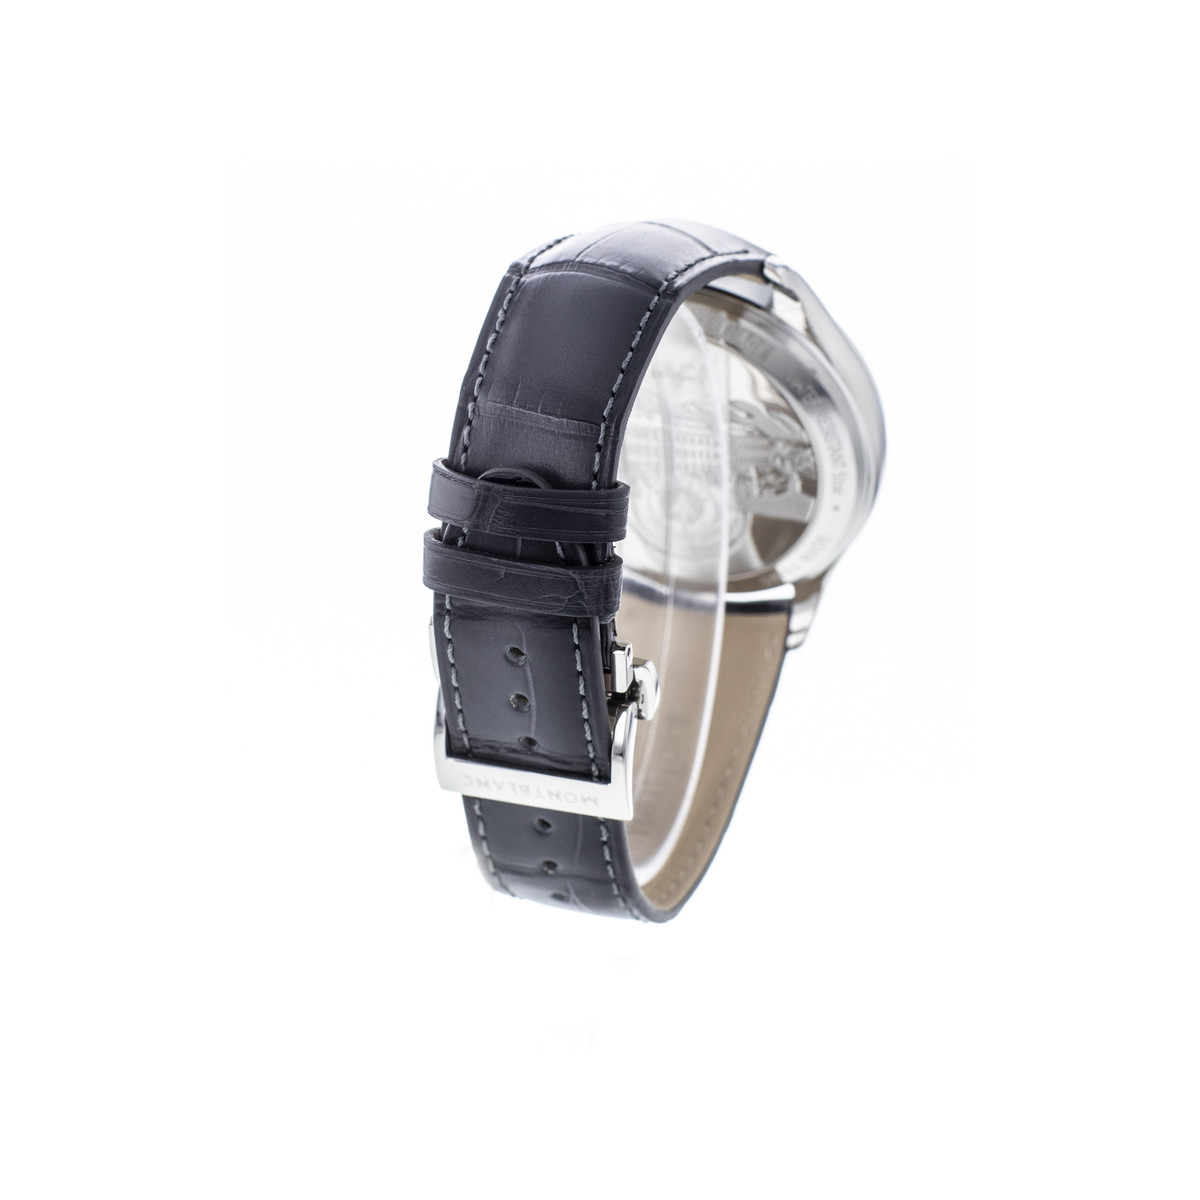 Montre d'occasion Montblanc Heritage homme chronographe automatique acier bracelet cuir noir - vue 3